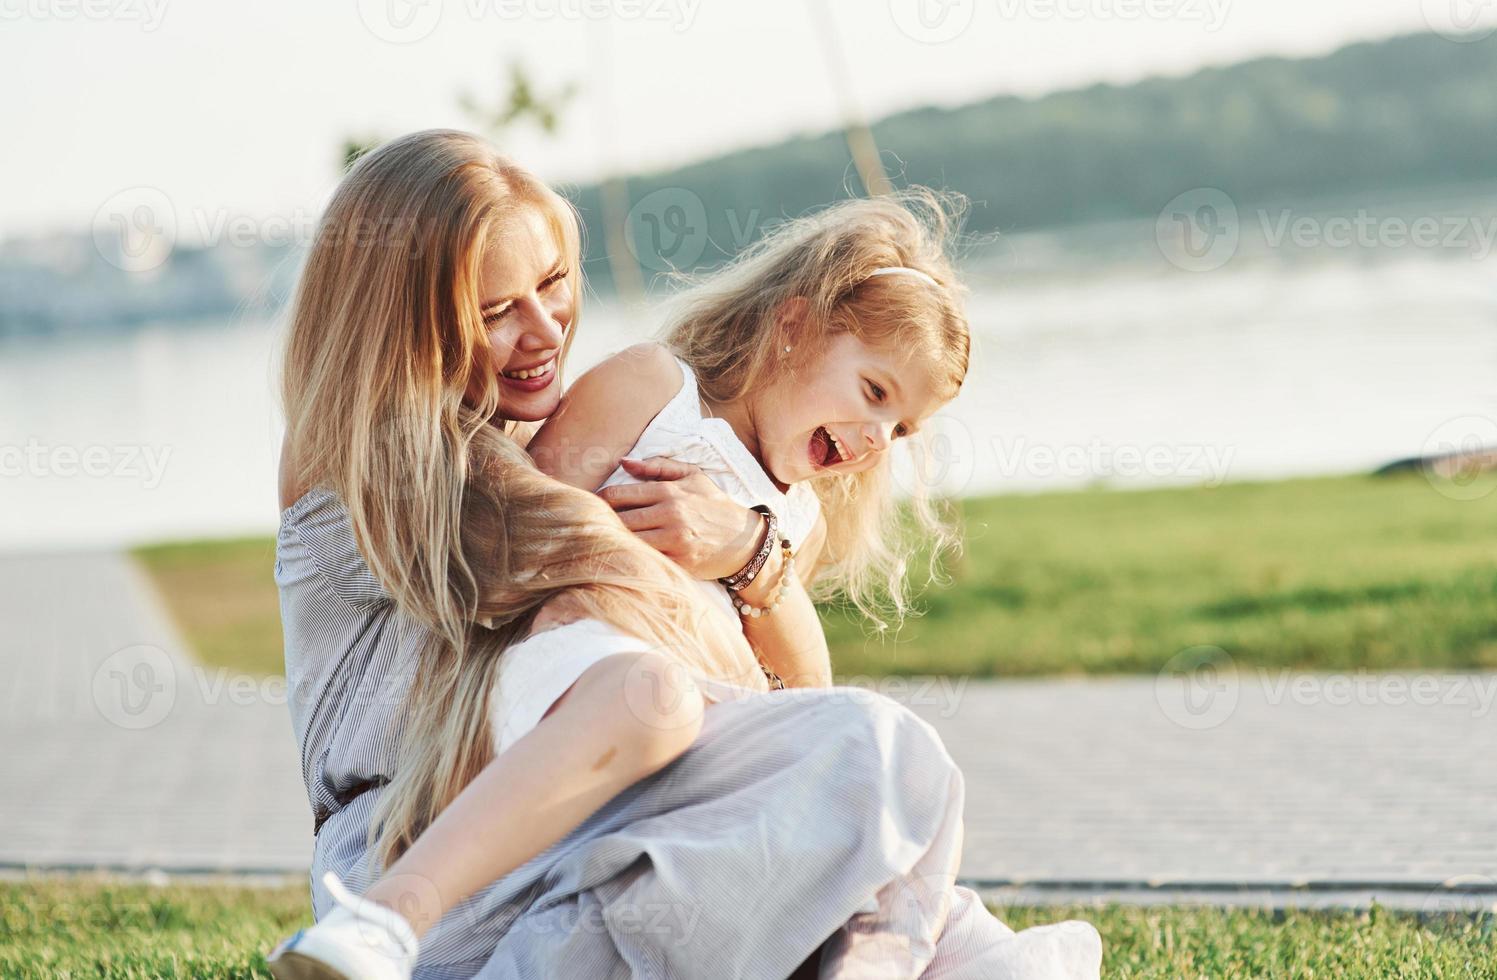 pure liefde. foto van jonge moeder en haar dochter die plezier hebben op het groene gras met meer op de achtergrond